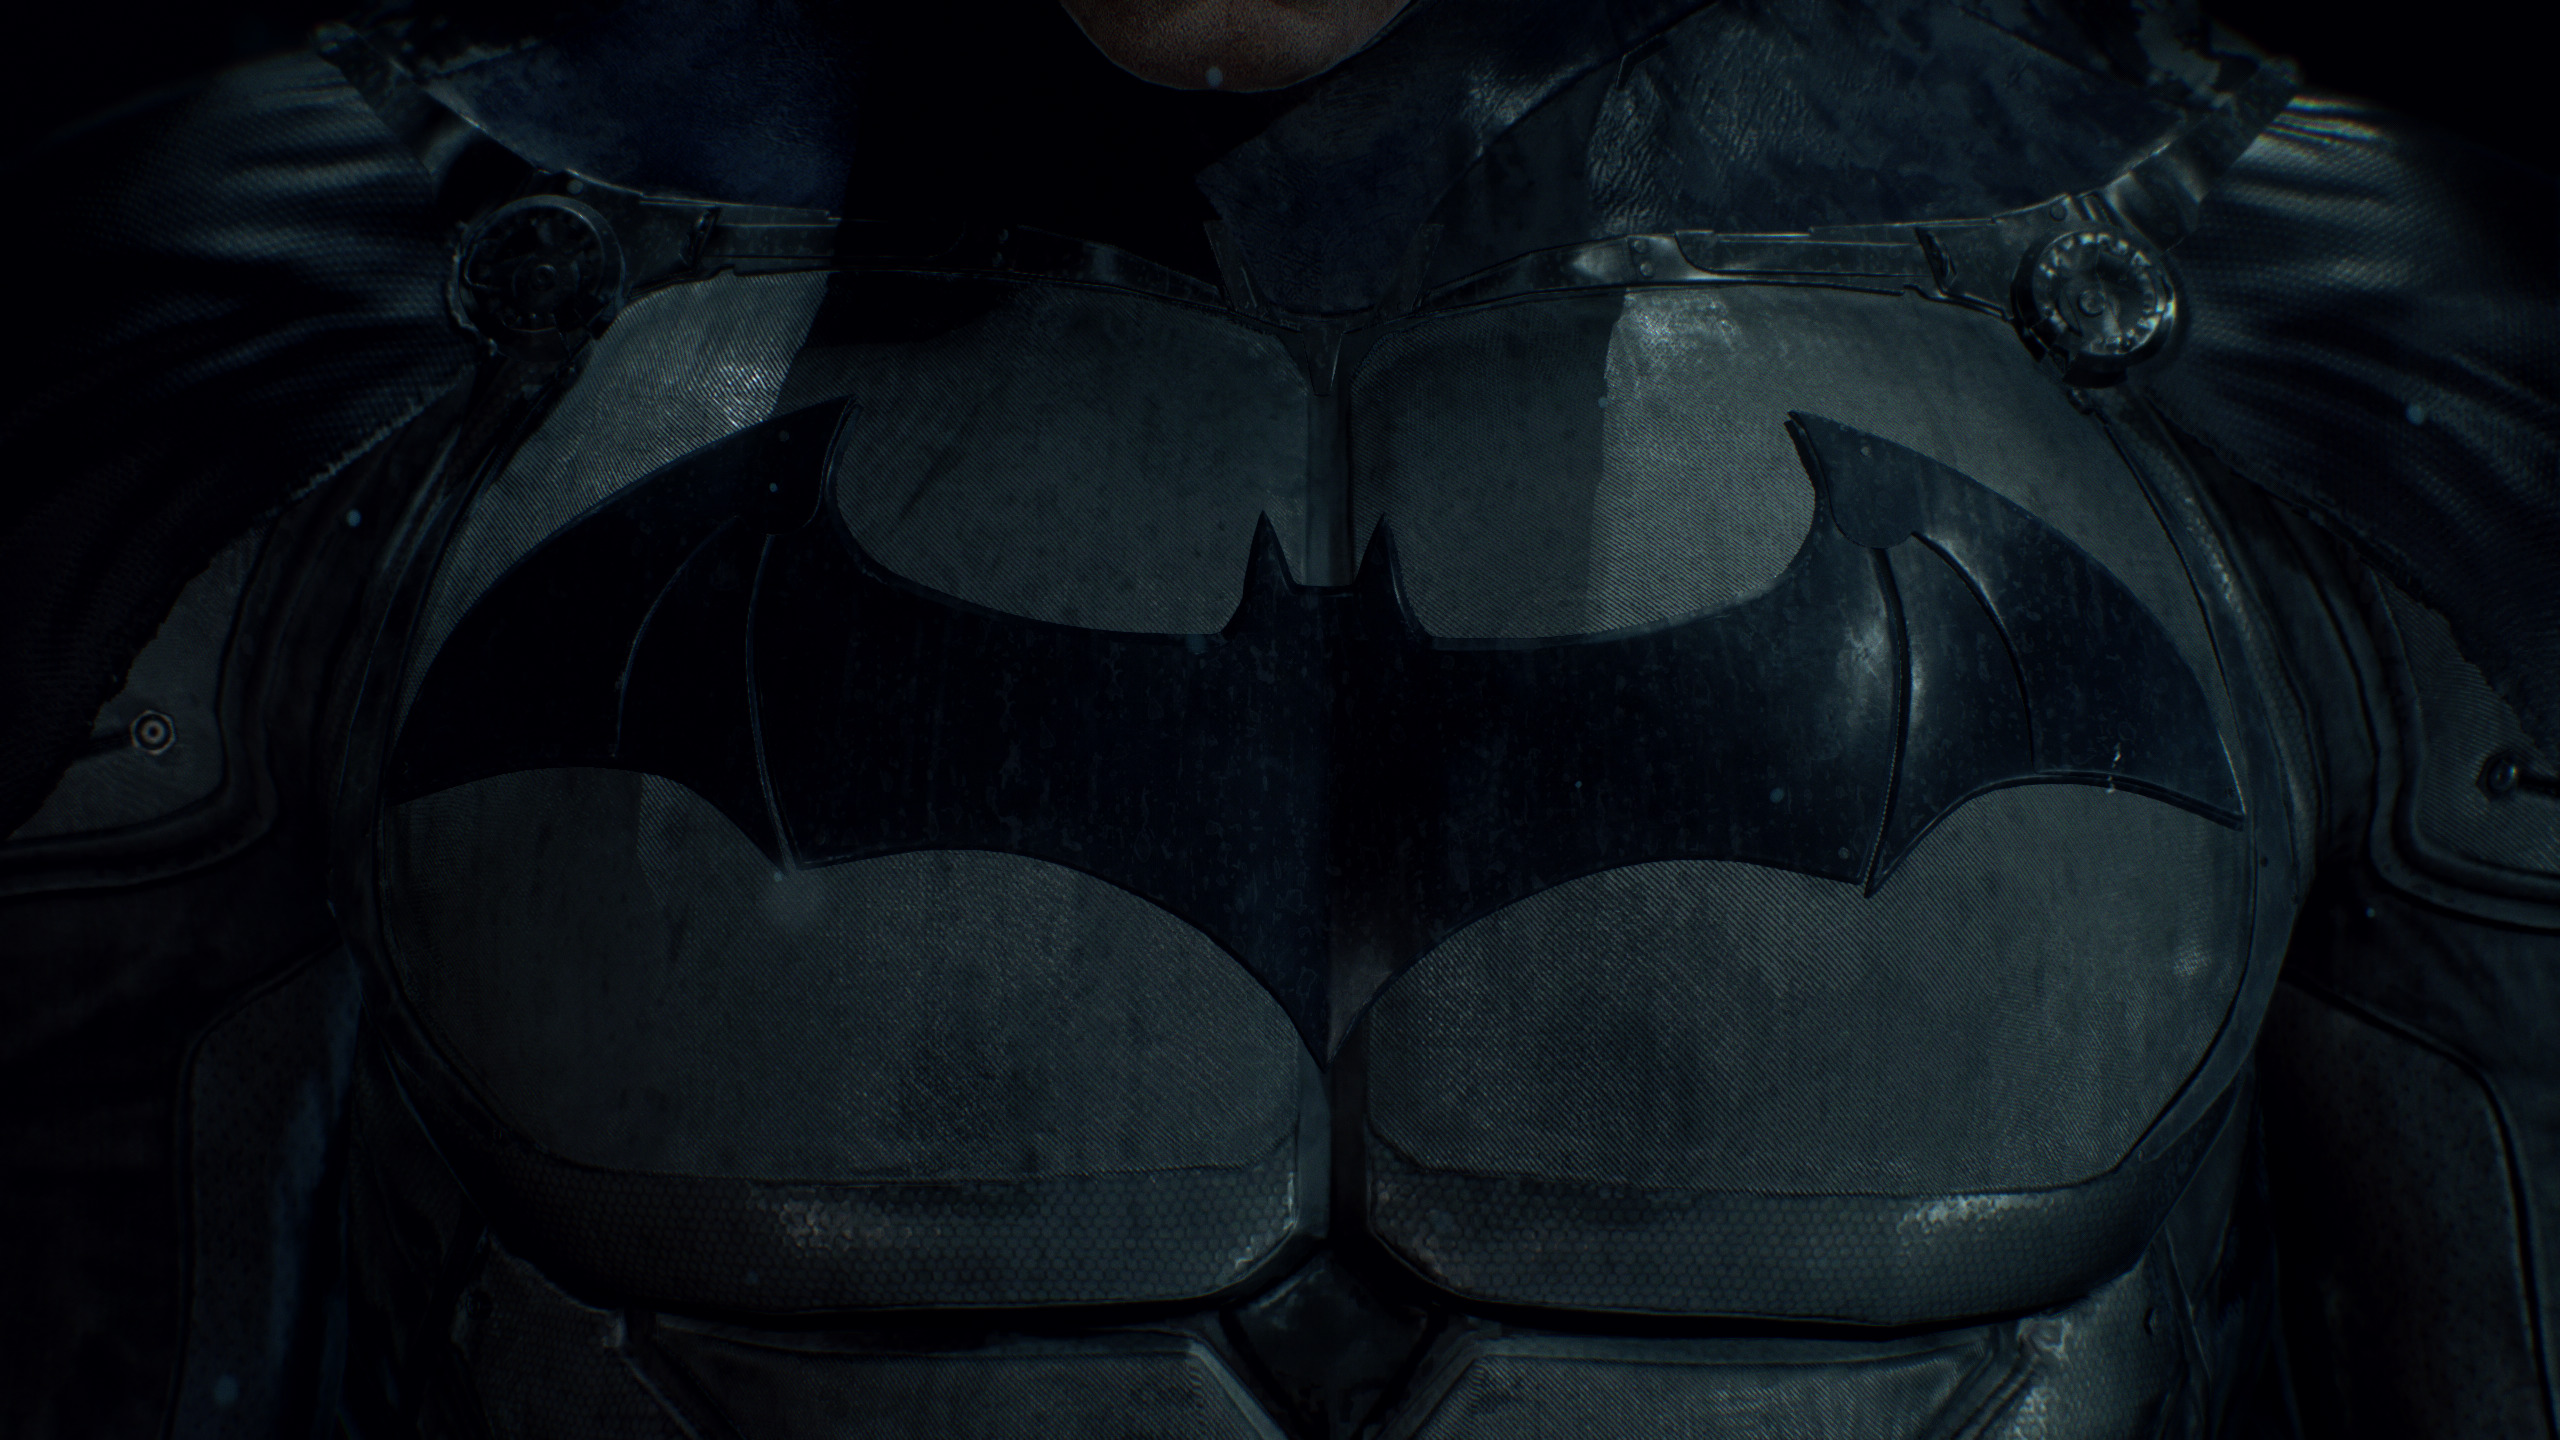 Batman Nipple Armor